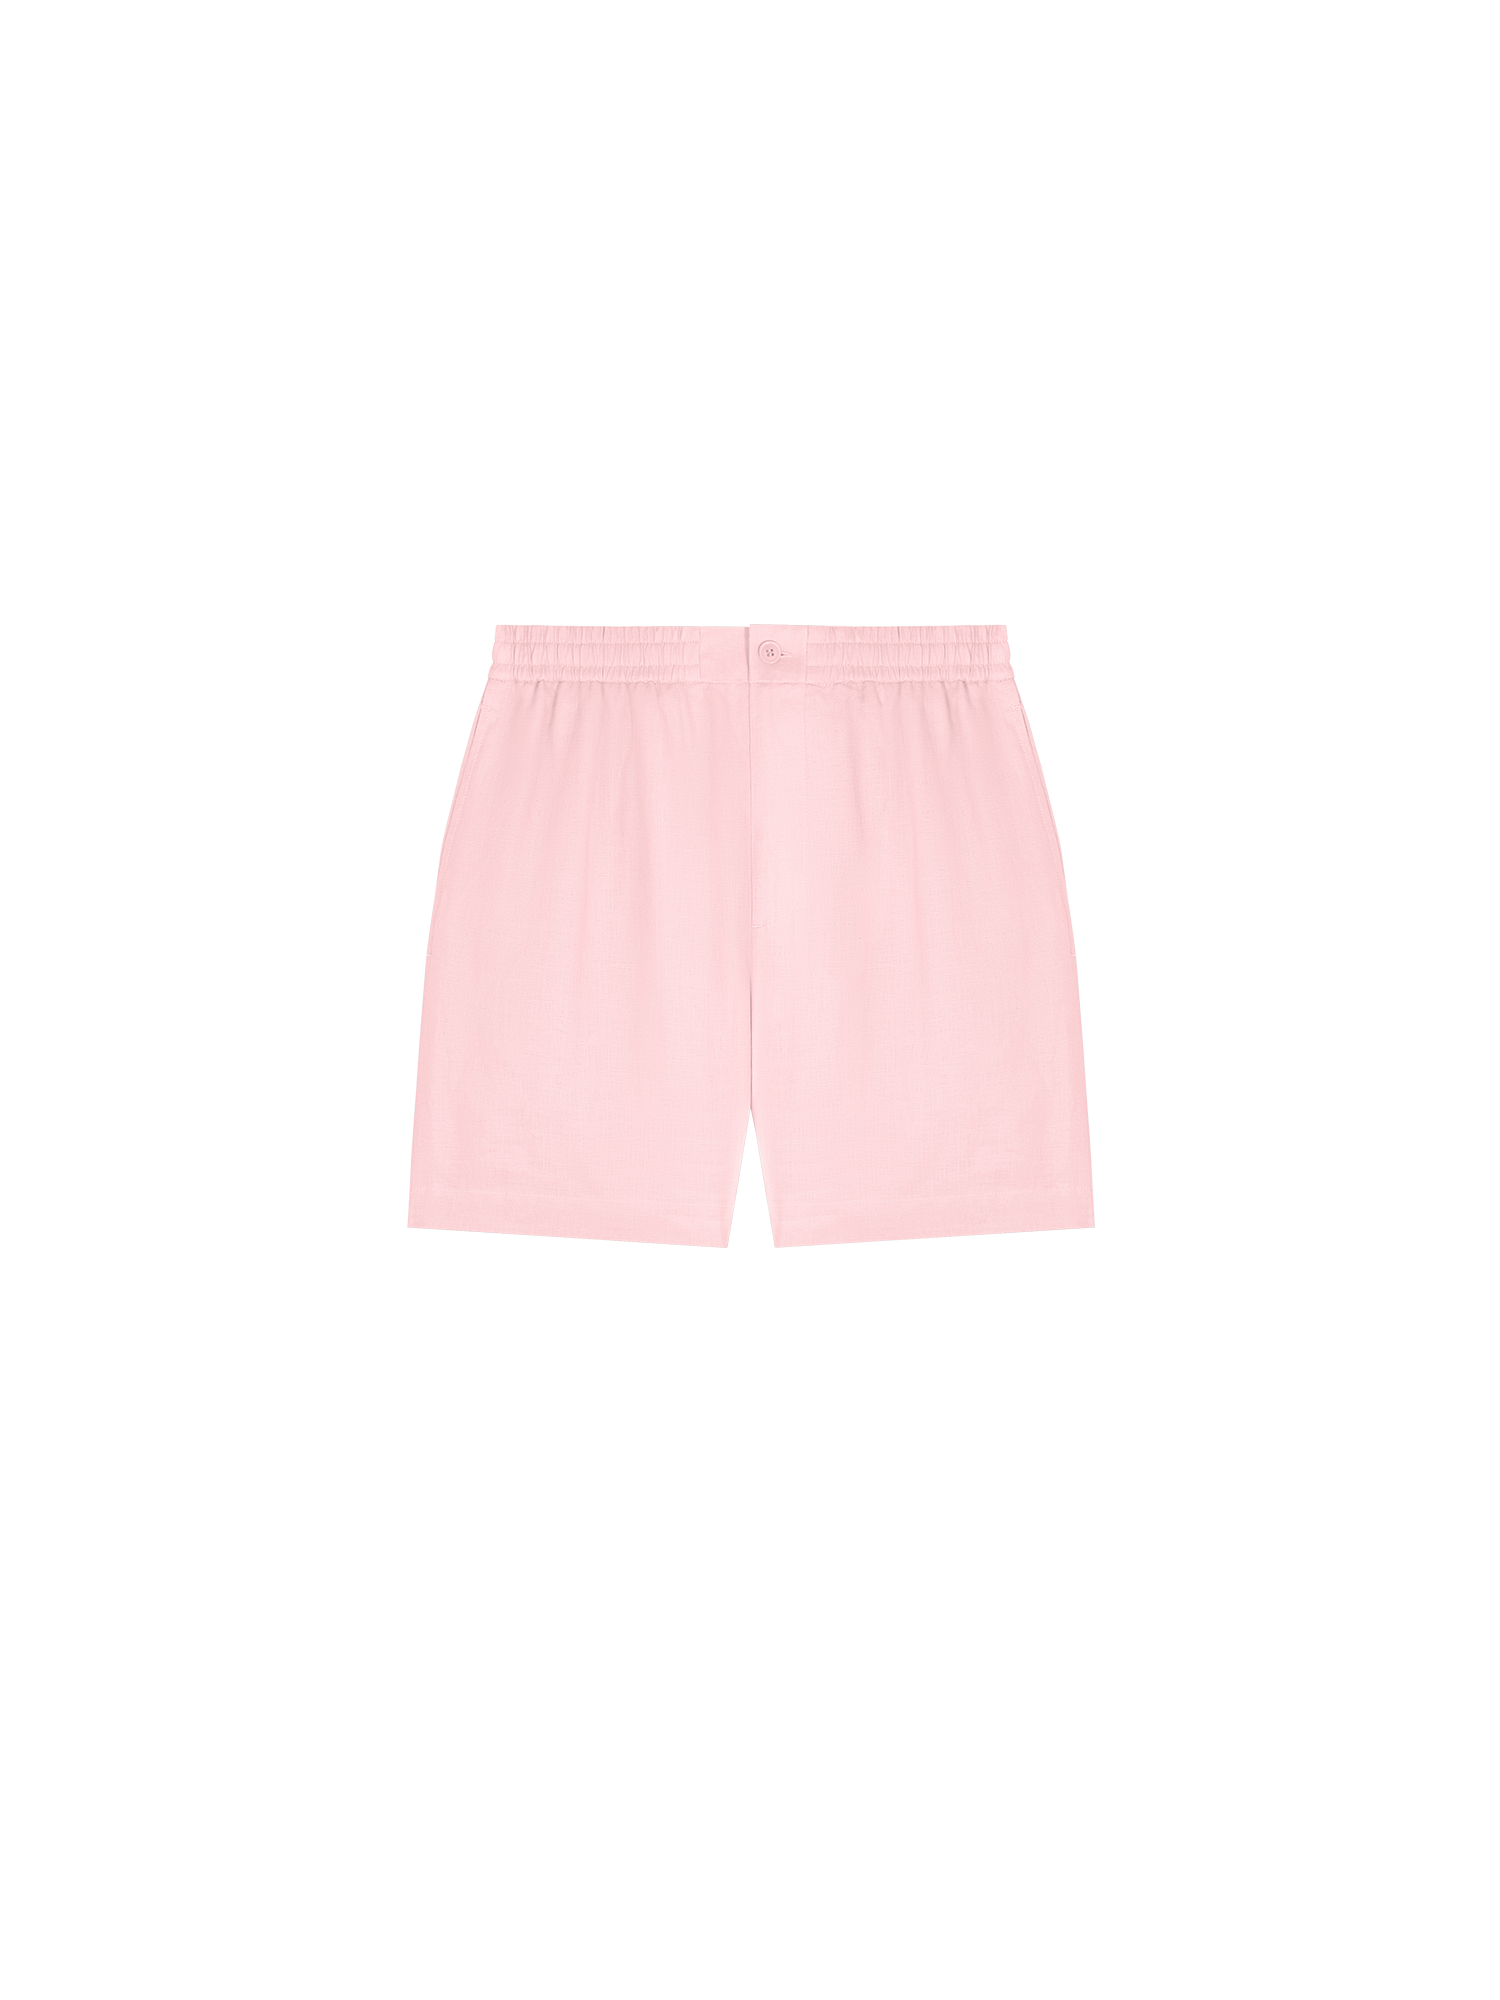 DNA_Linen_Mid_Length_Shorts_Magnolia_Pink-packshot-11